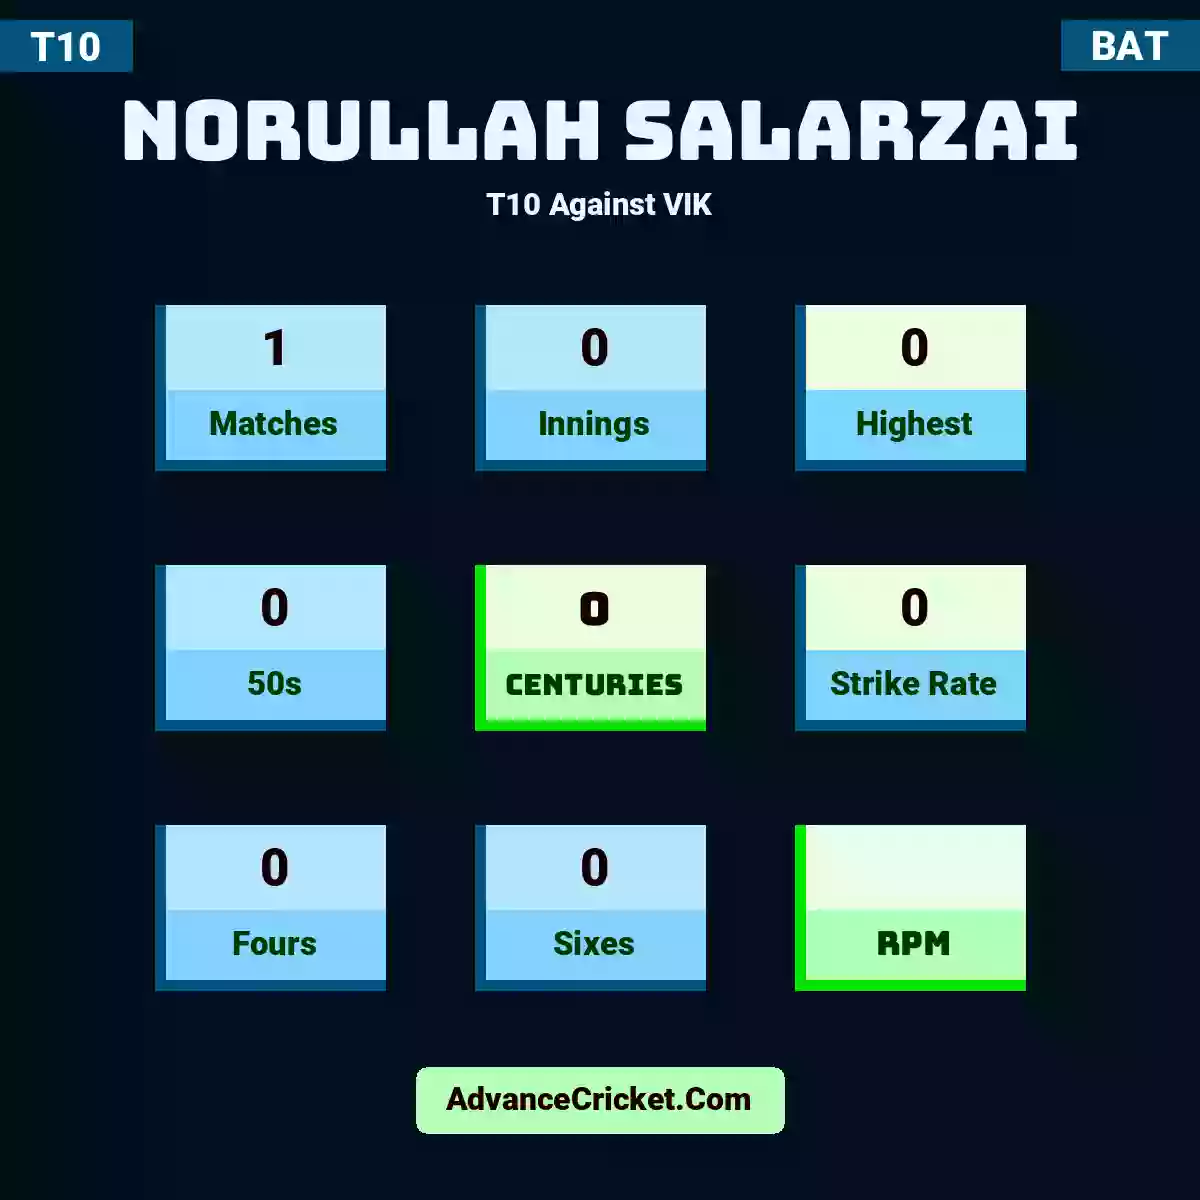 Norullah Salarzai T10  Against VIK, Norullah Salarzai played 1 matches, scored 0 runs as highest, 0 half-centuries, and 0 centuries, with a strike rate of 0. N.Salarzai hit 0 fours and 0 sixes.